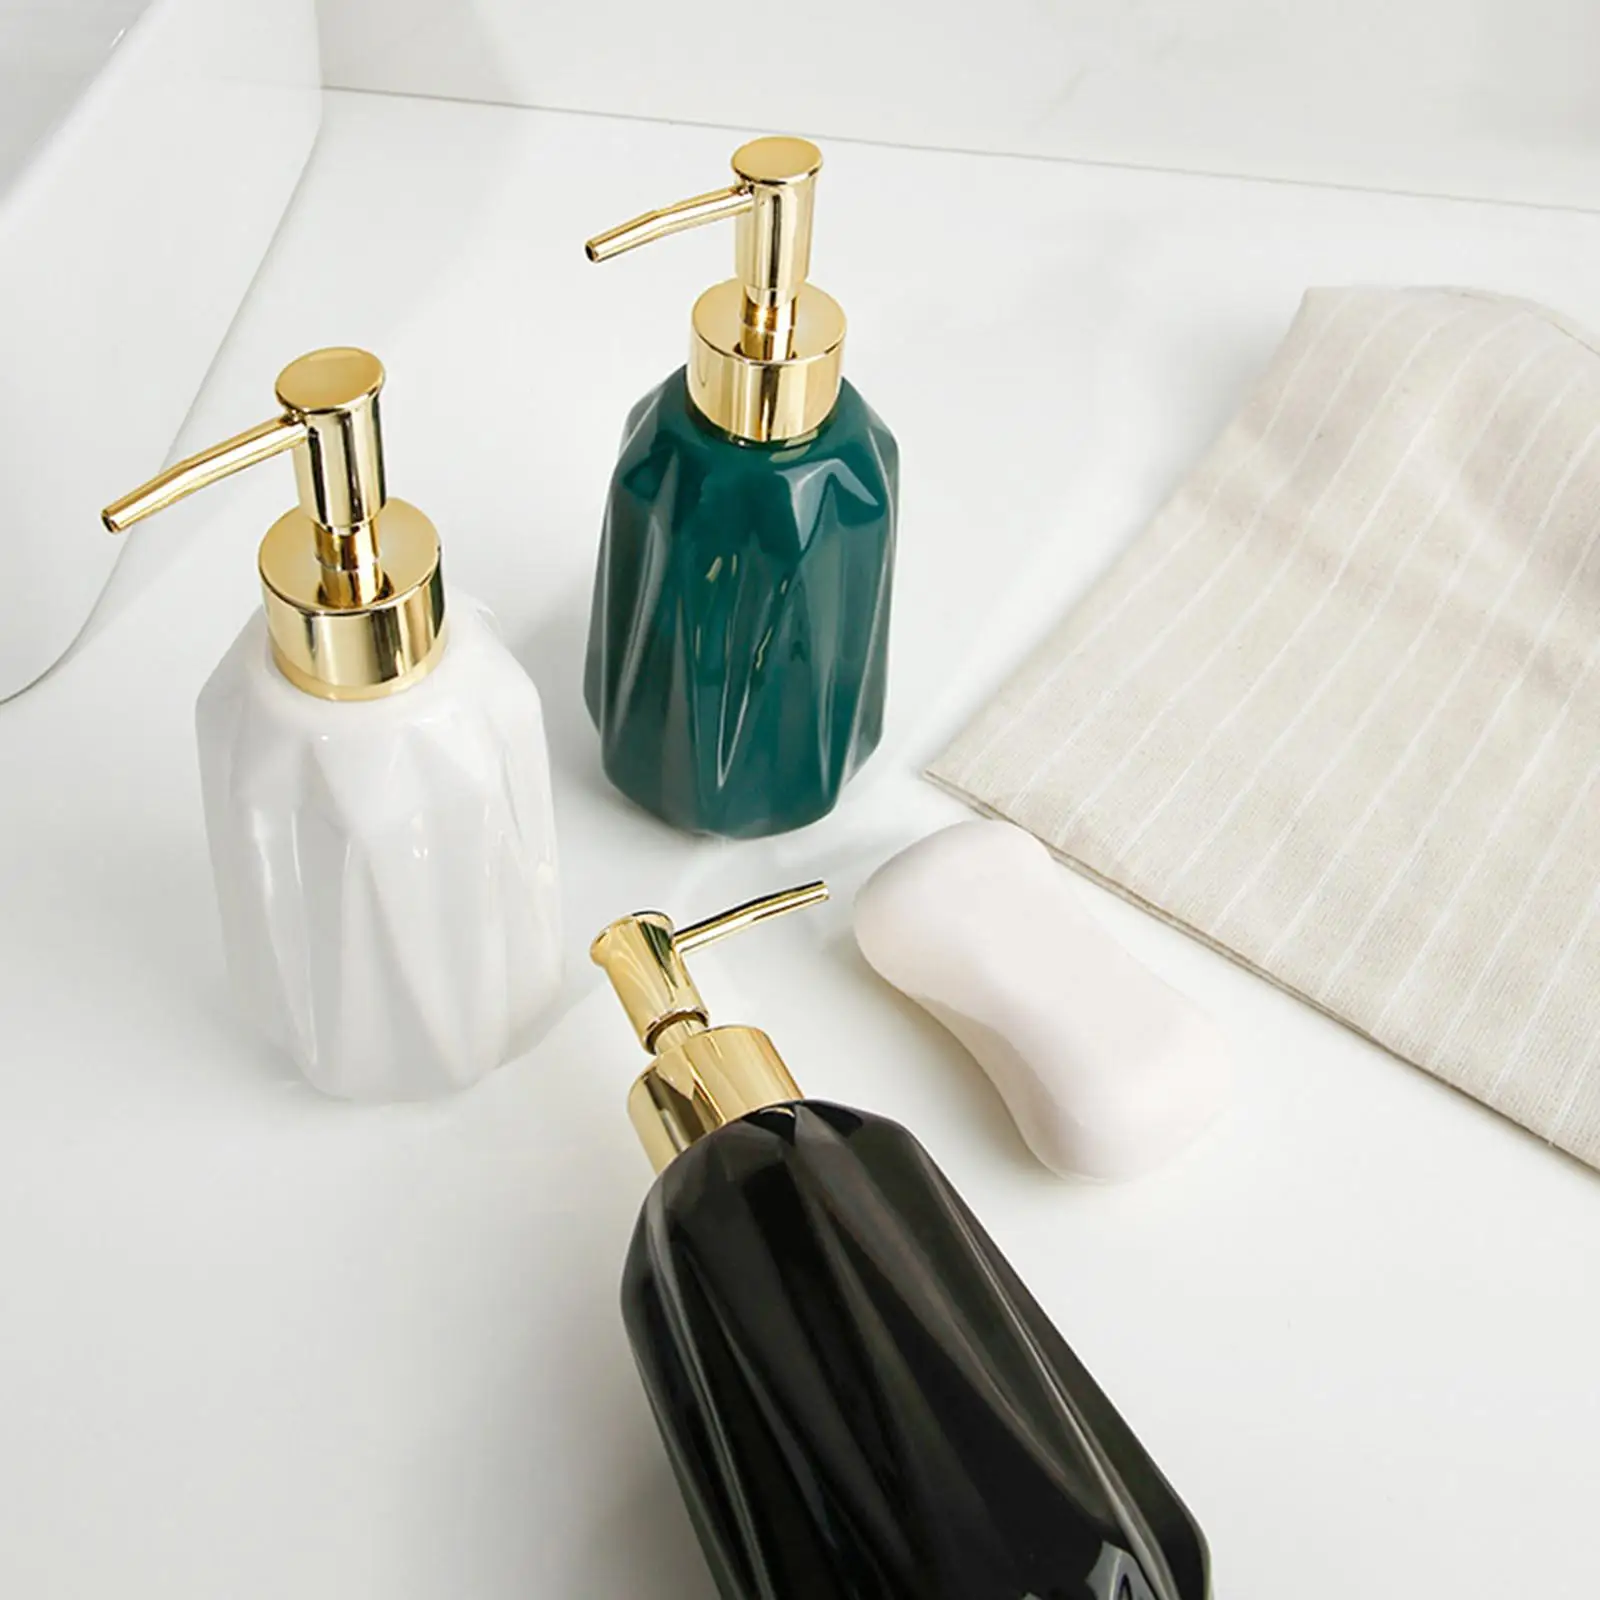 Soap Dispenser Lotion Bottle 300ml Refillable for Restroom Restaurant Hotel